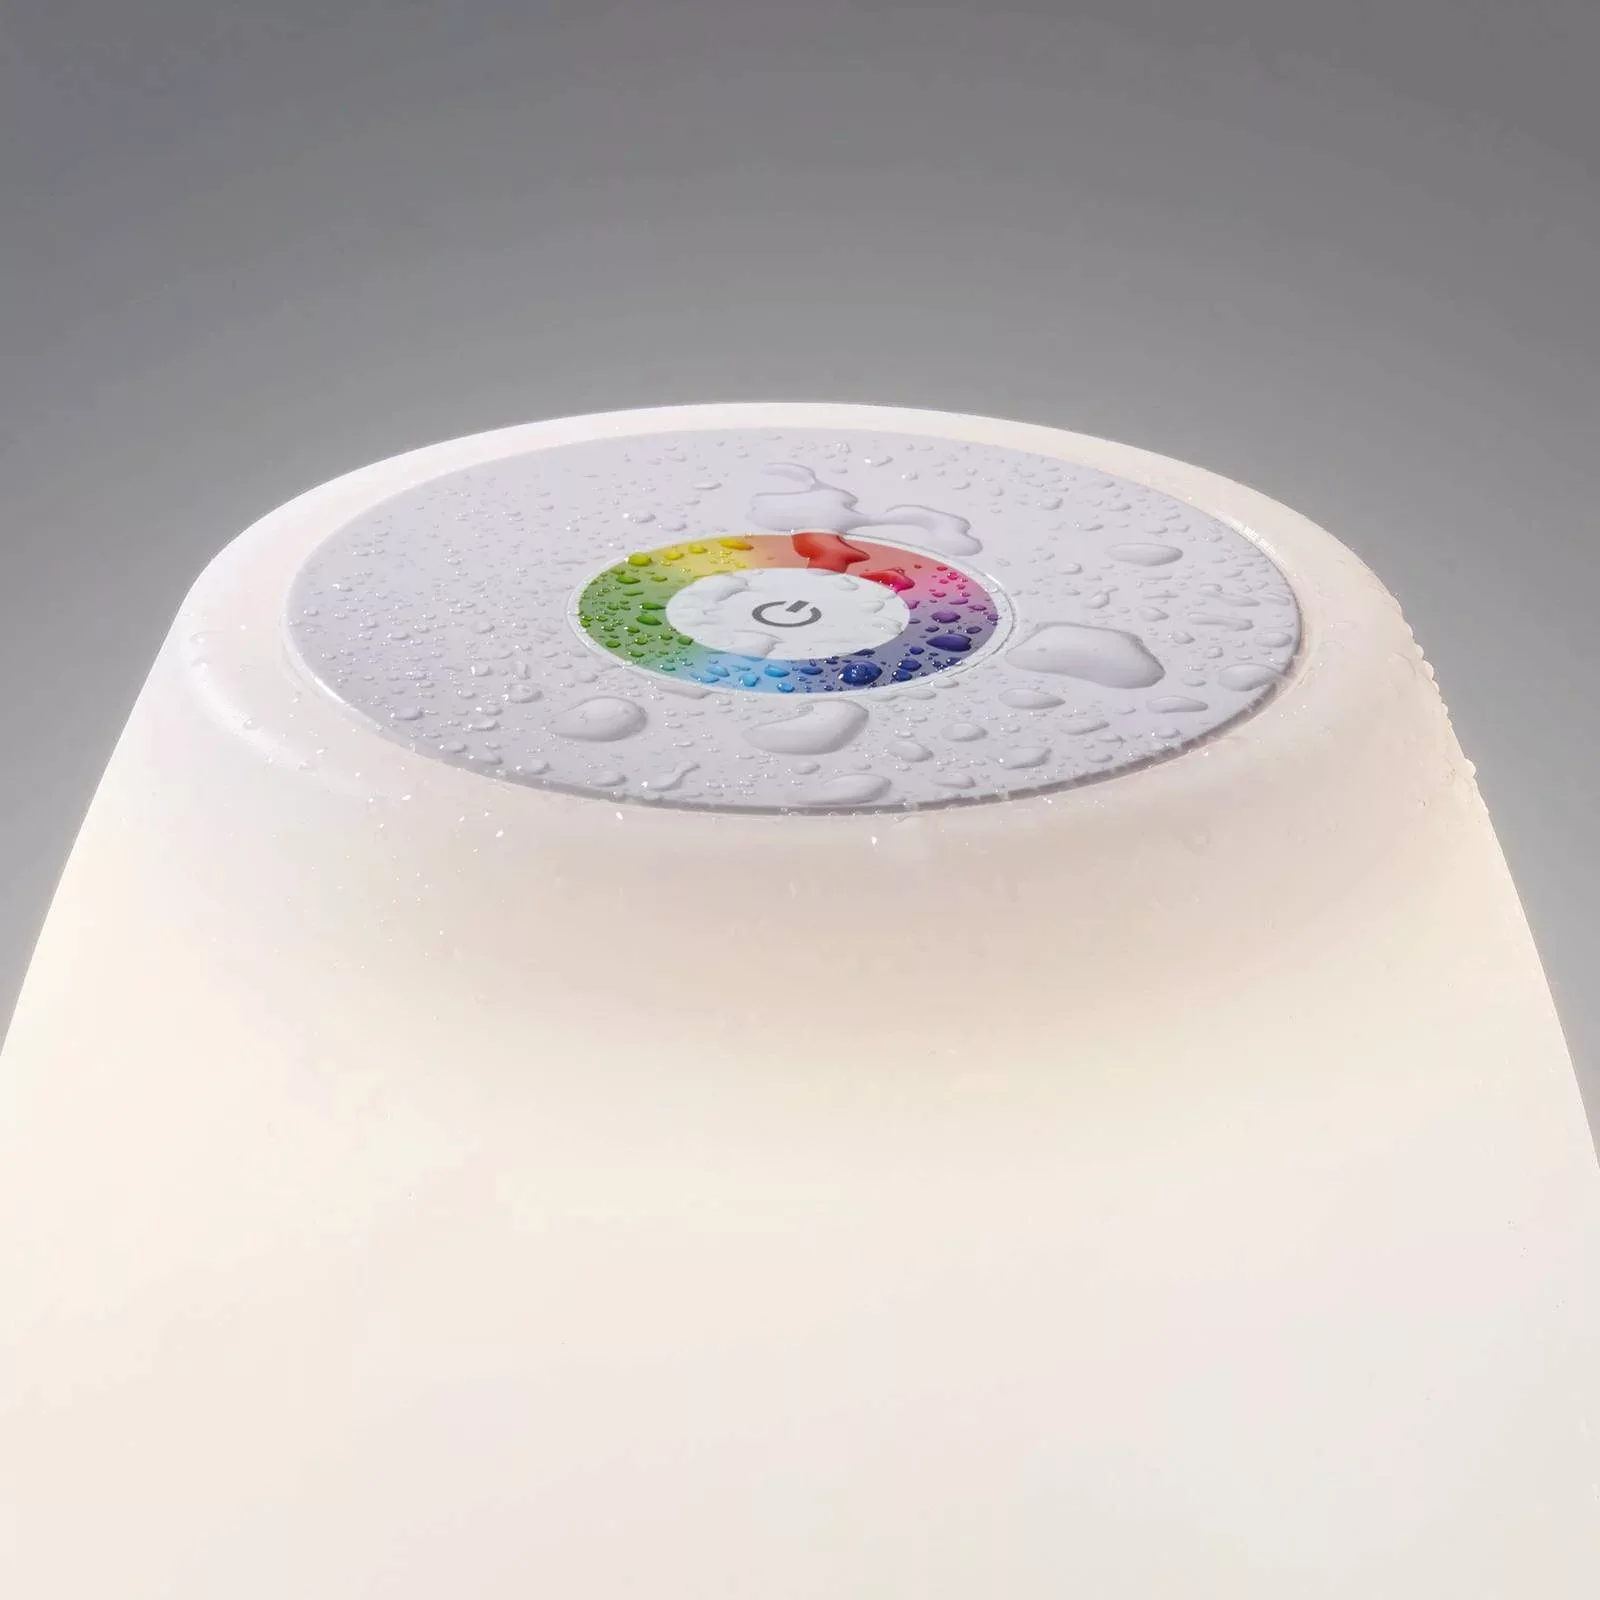 LED-Außentischlampe Barletta mit Akku RGBW dimmbar günstig online kaufen